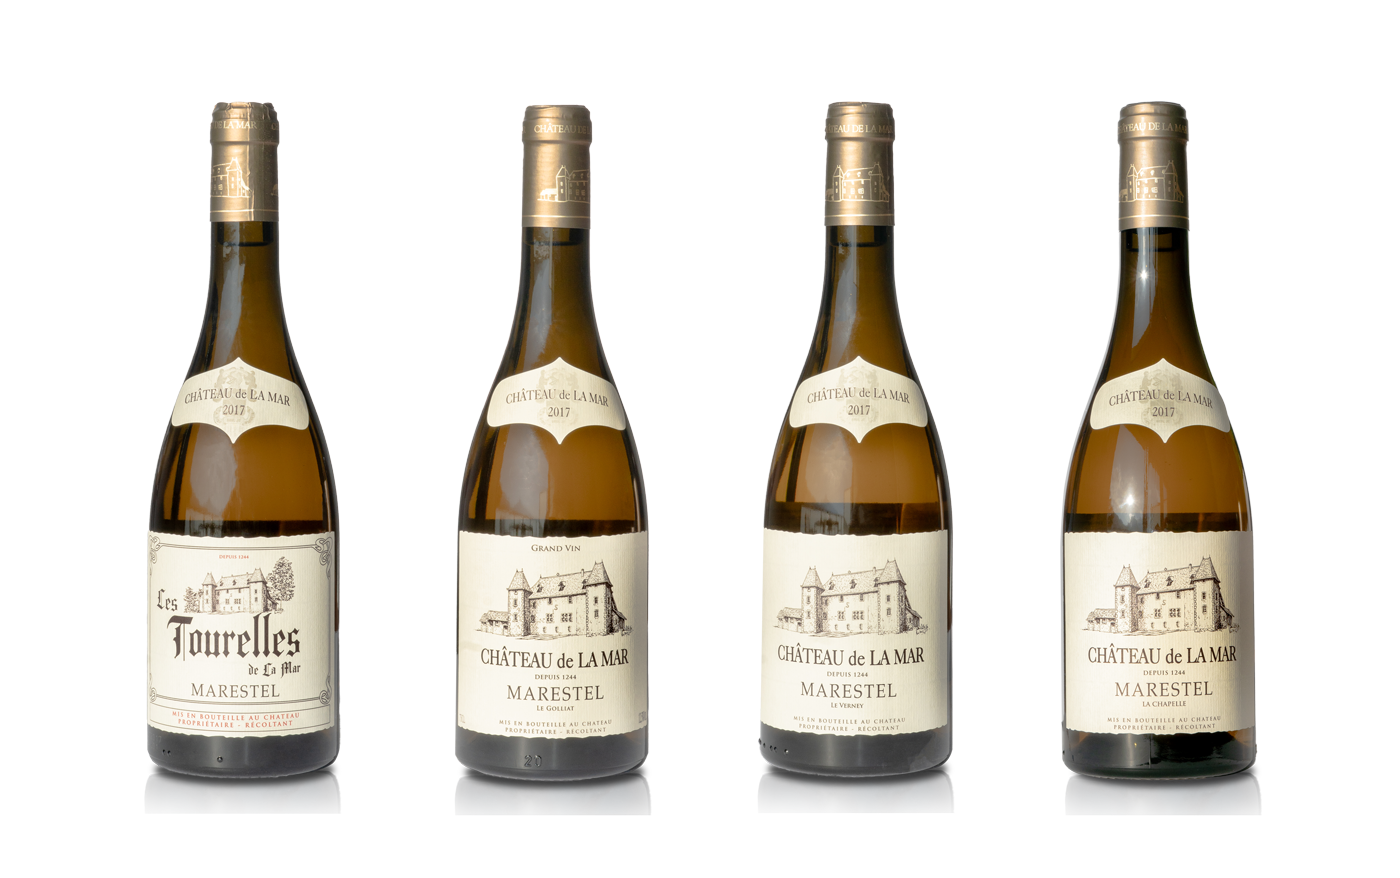 Les Marestel Vins Blancs de Savoie - Chateau de La Mar